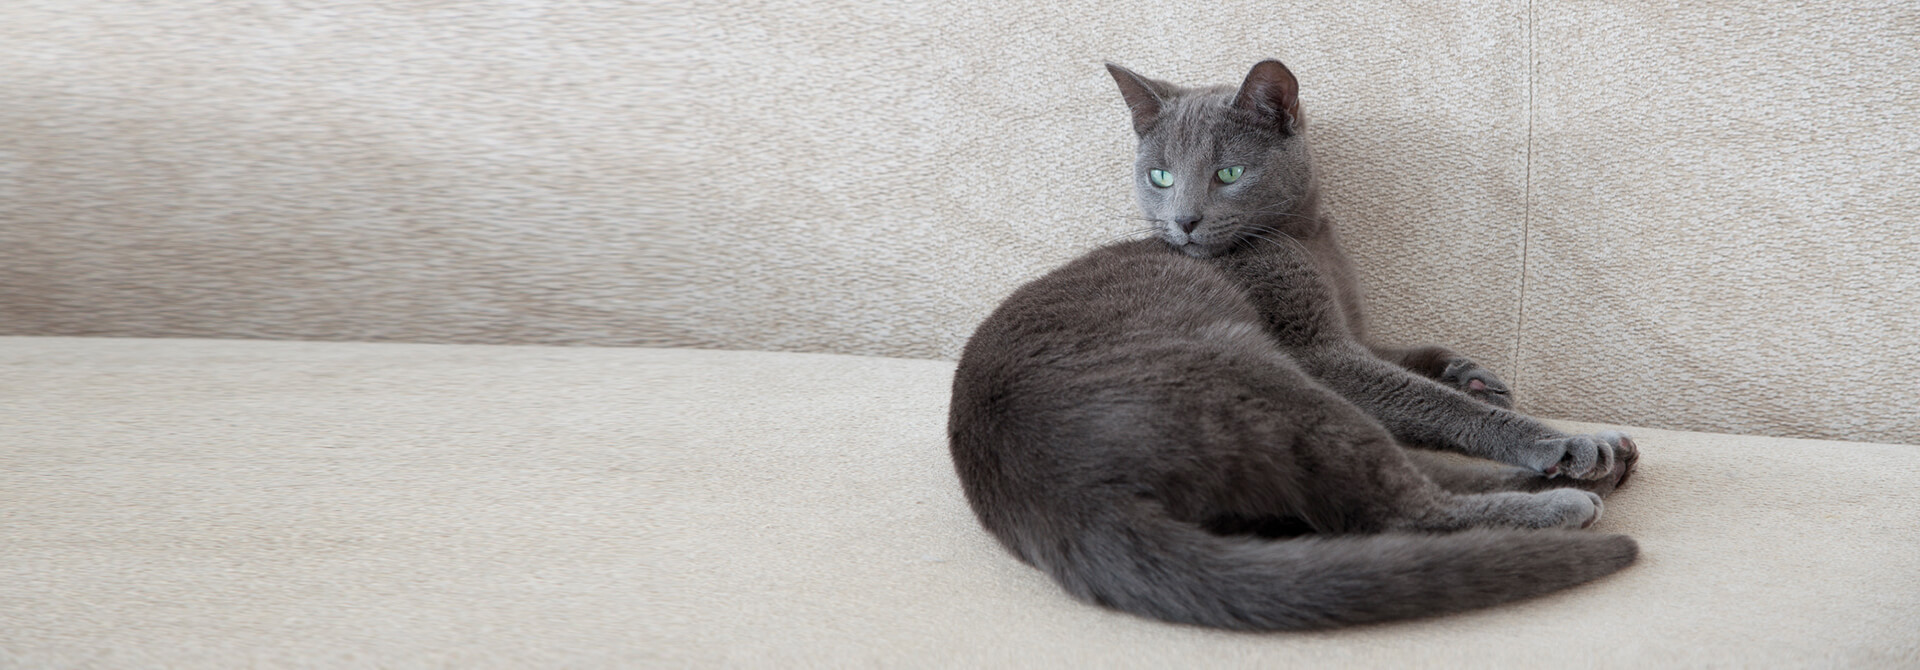 Chat gris se prélassant sur un tapis de couleur claire